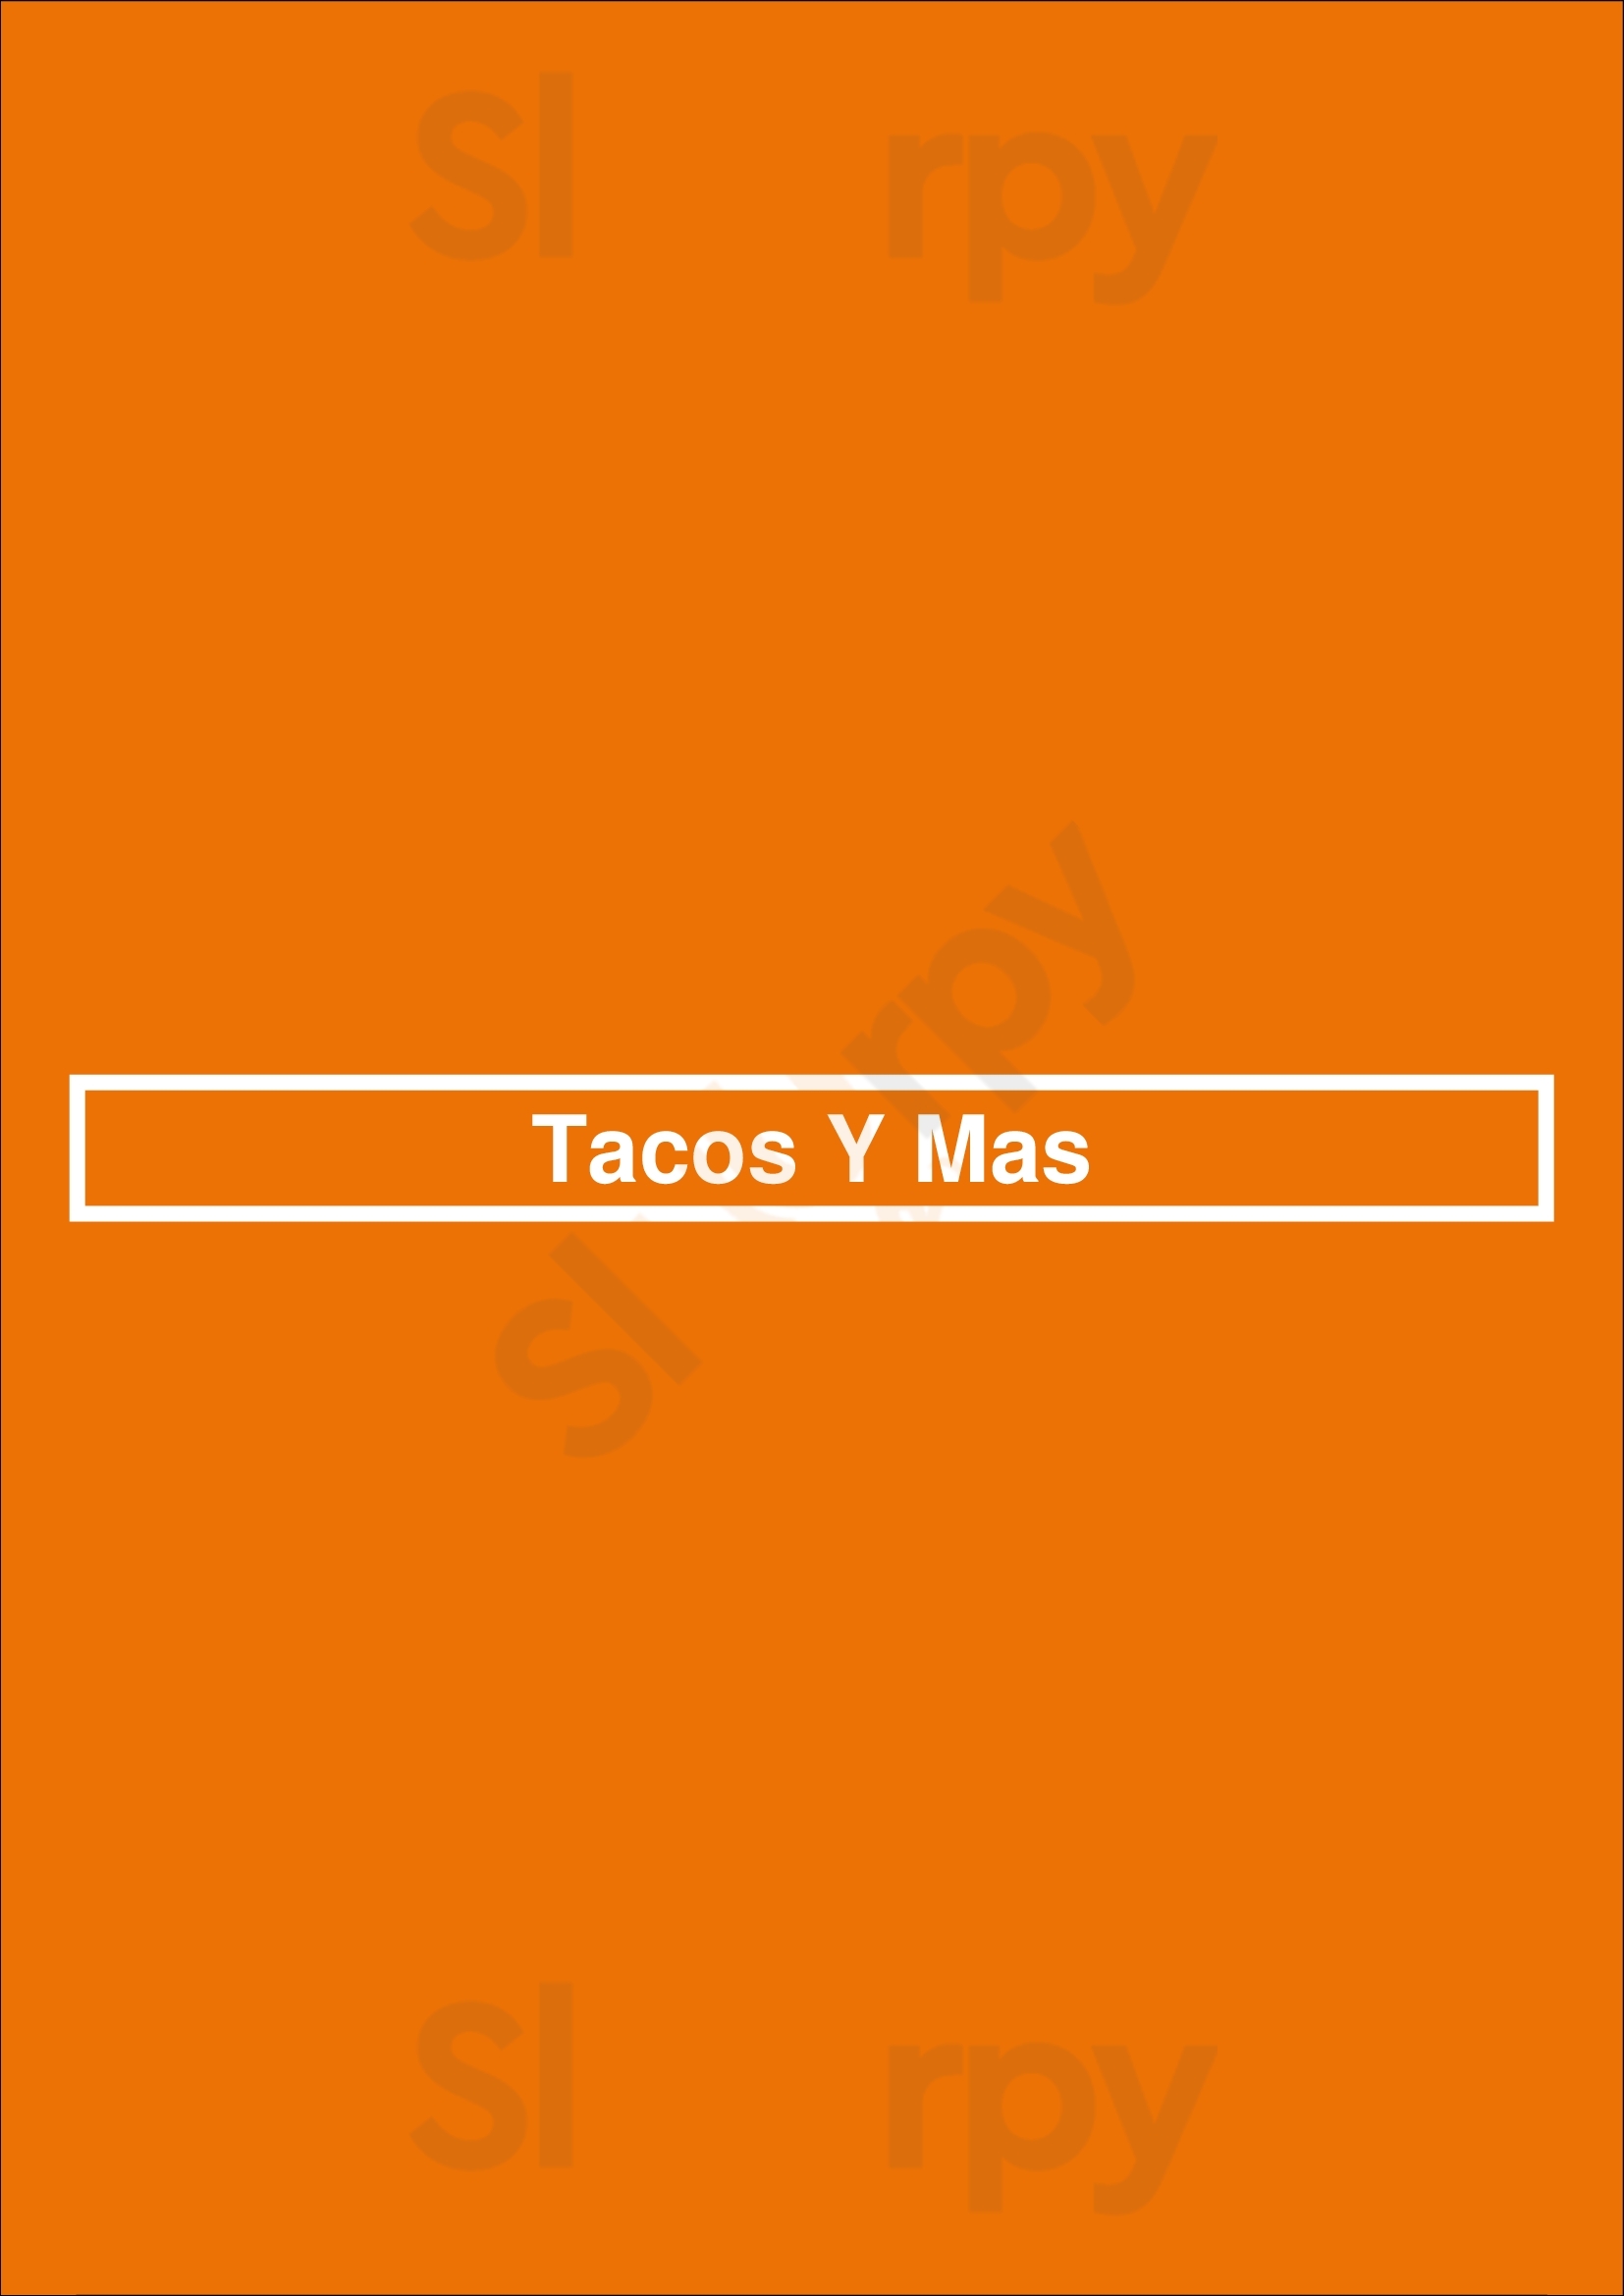 Tacos Y Mas Dallas Menu - 1